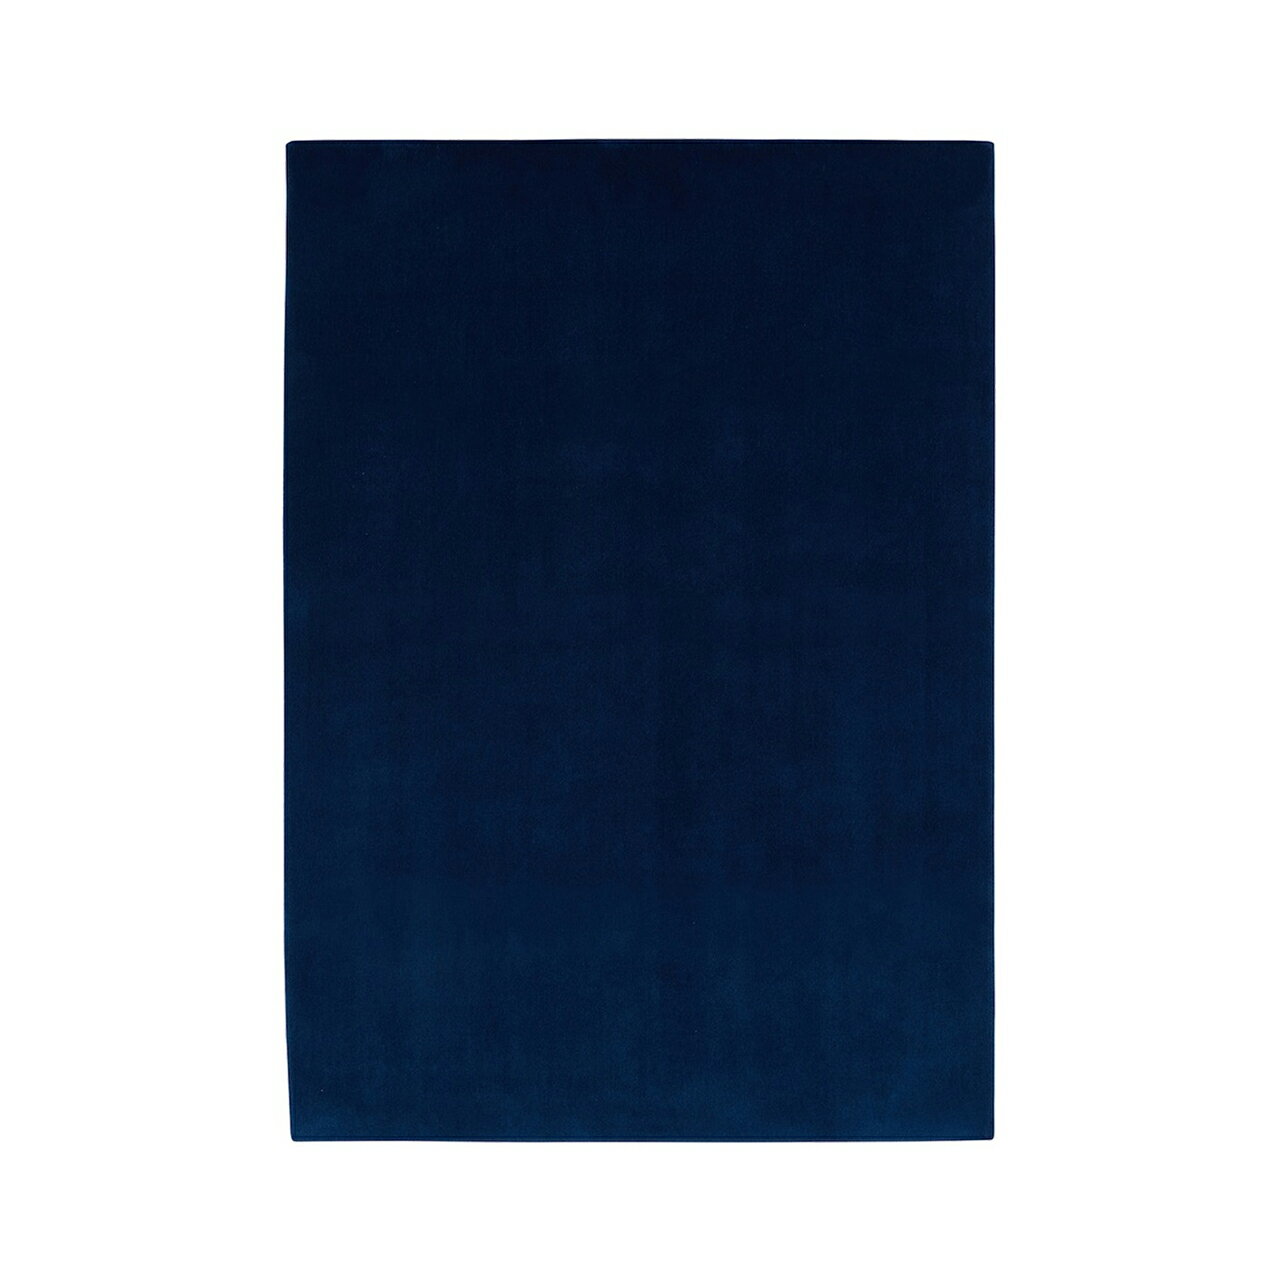 [山形緞通 プレミアム無地]『MANYO』KAKITUBATA [選べるS/Mサイズ] オリエンタルカーペット 絨毯 じゅうたん 高級 高品質 インテリア ラグ マット 敷物 F21A-159var